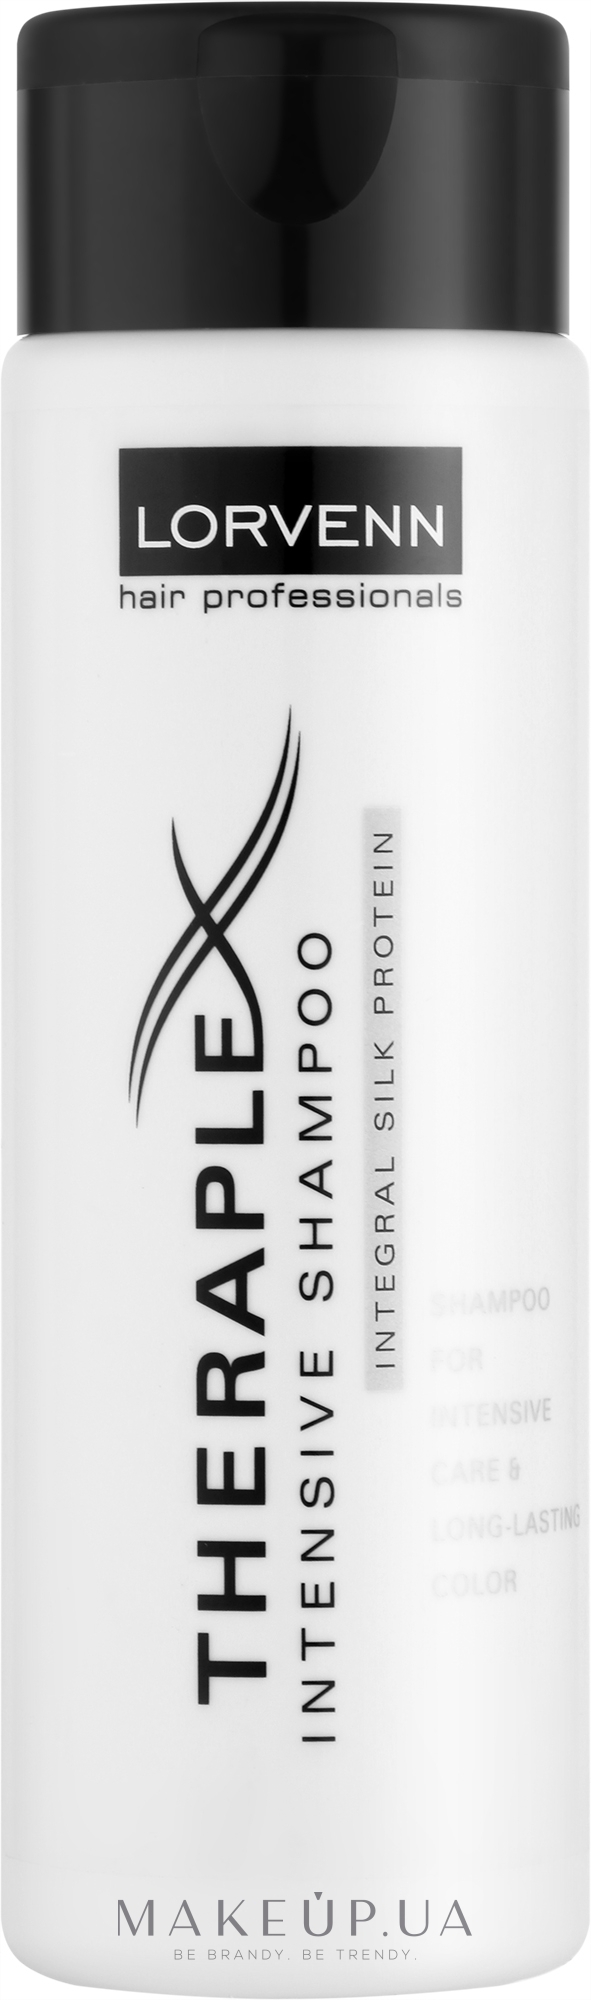 Шампунь для интенсивного ухода и сохранения цвета - Lorvenn Theraplex Intensive Shampoo — фото 200ml